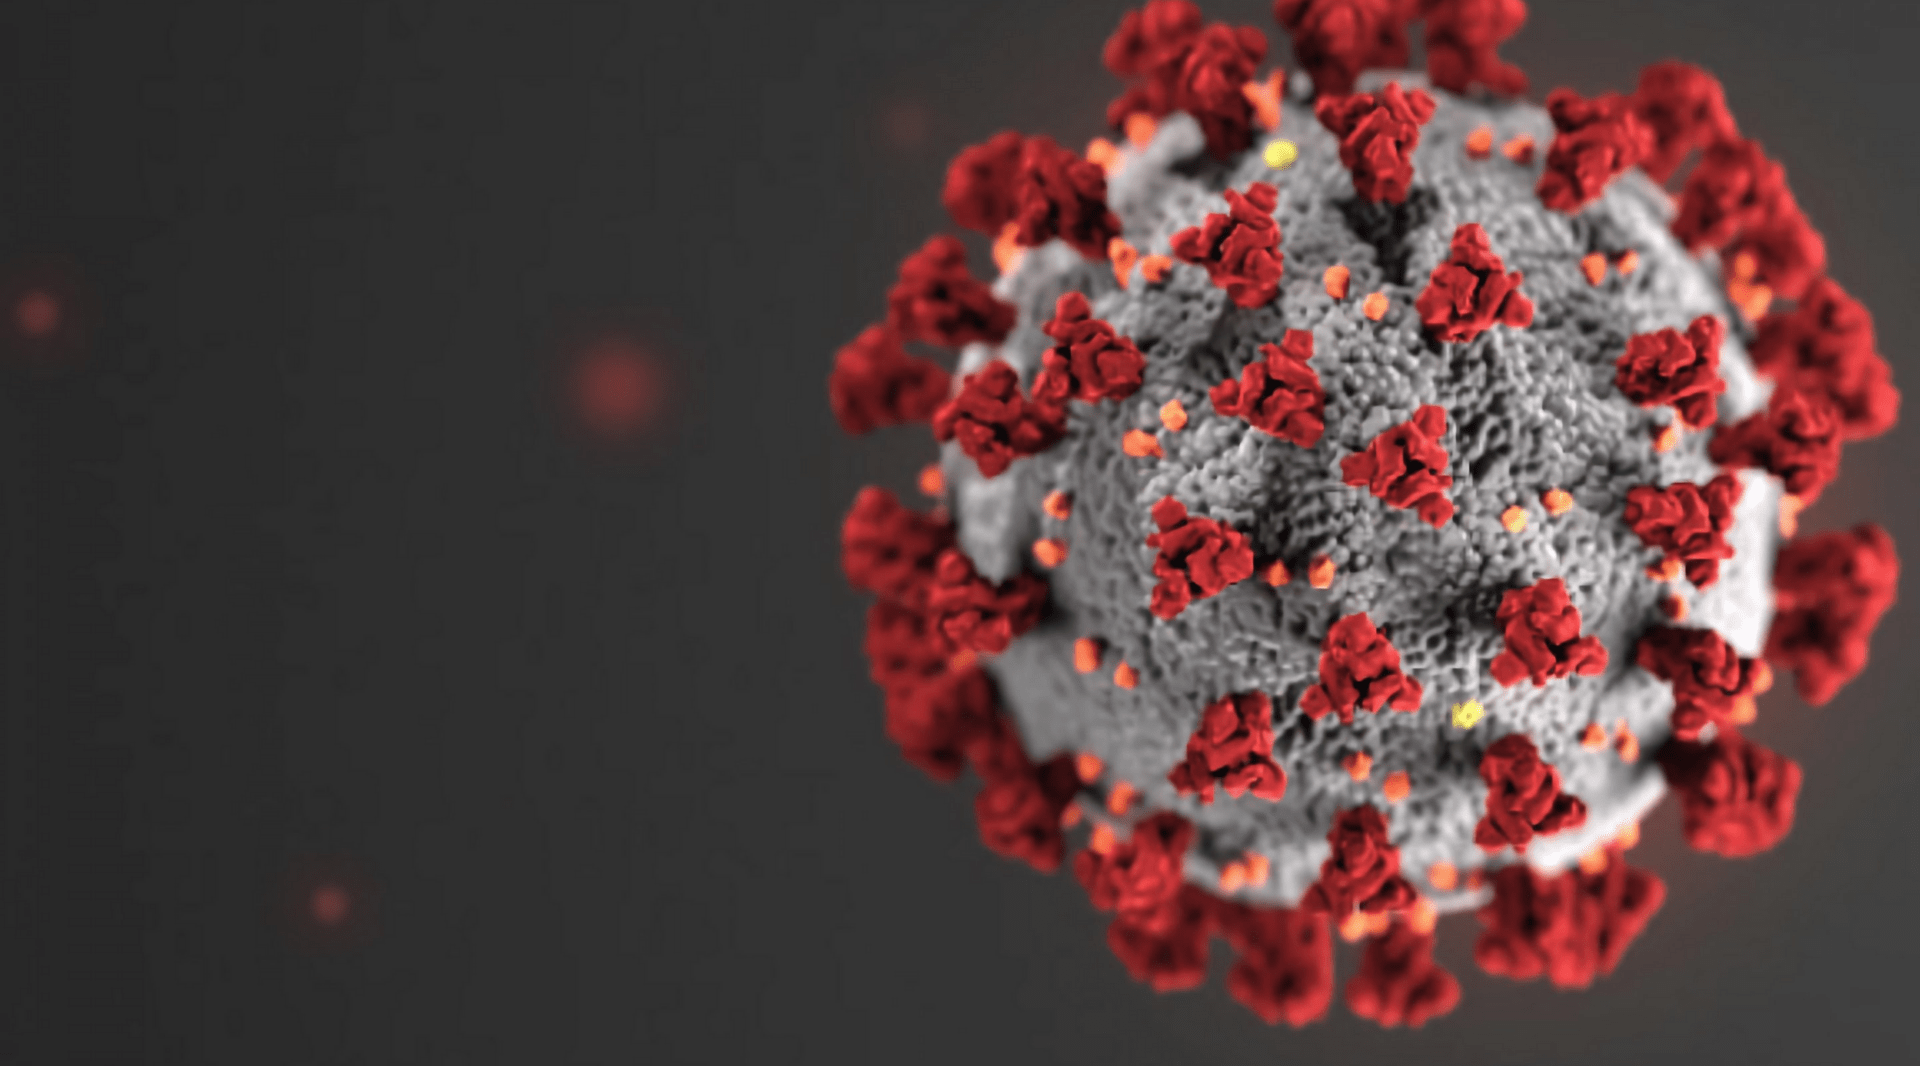 MV disponibiliza tecnologias em apoio ao combate do coronavírus